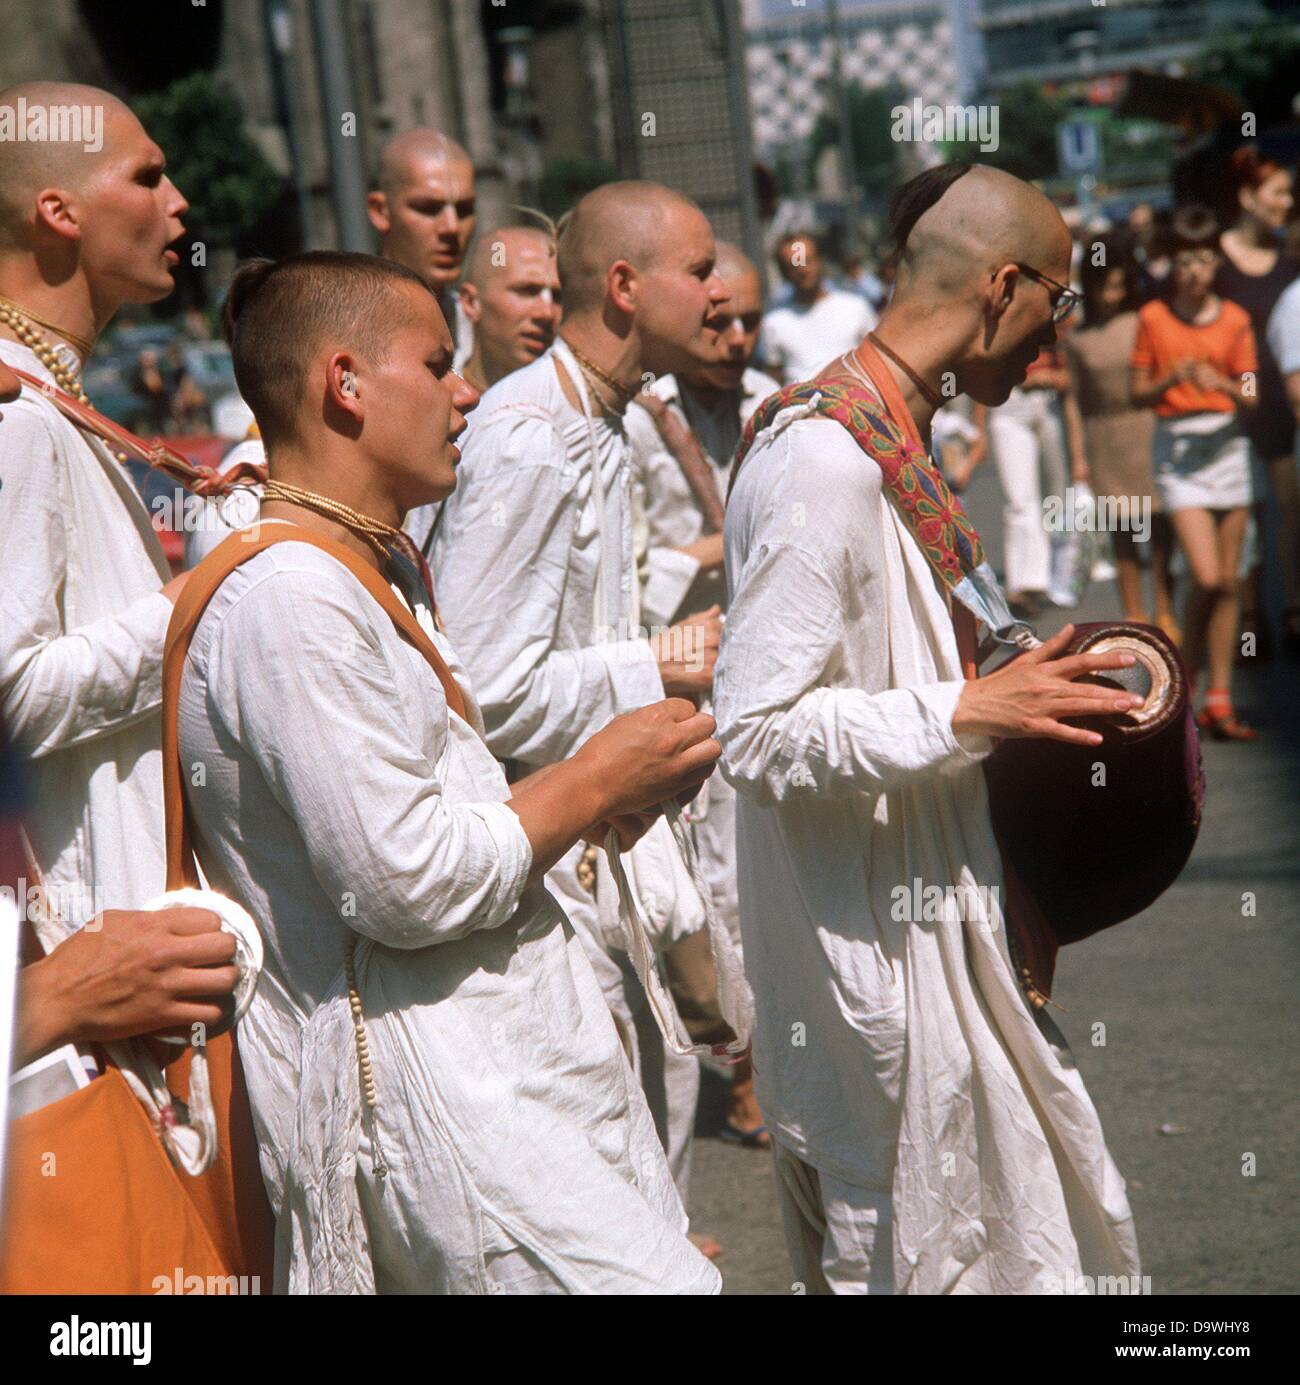 Les adeptes de la secte Radha-Krisnan inviter pour une visite de leur temple avec chants et danses, photographiés dans les années 1970. Banque D'Images